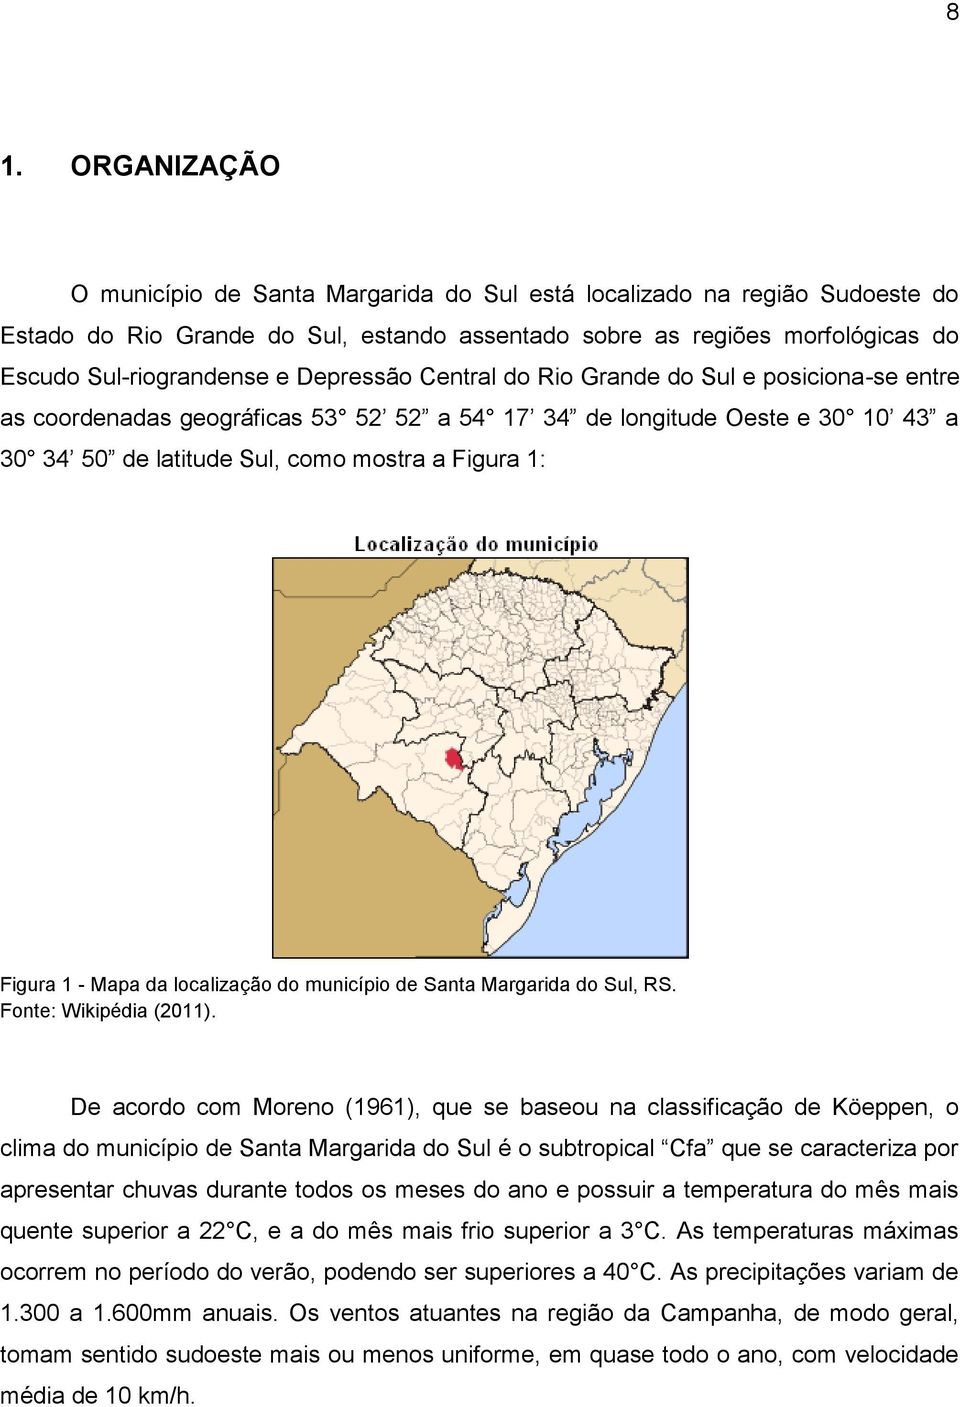 Mapa da localização do município de Santa Margarida do Sul, RS. Fonte: Wikipédia (2011).